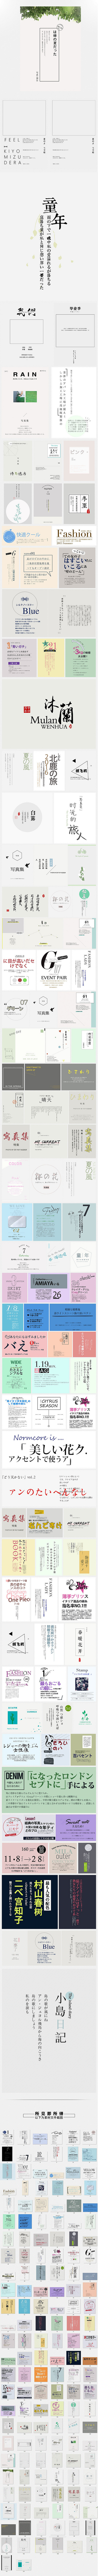 日系摄影排版  字体编排  版式模板 @...